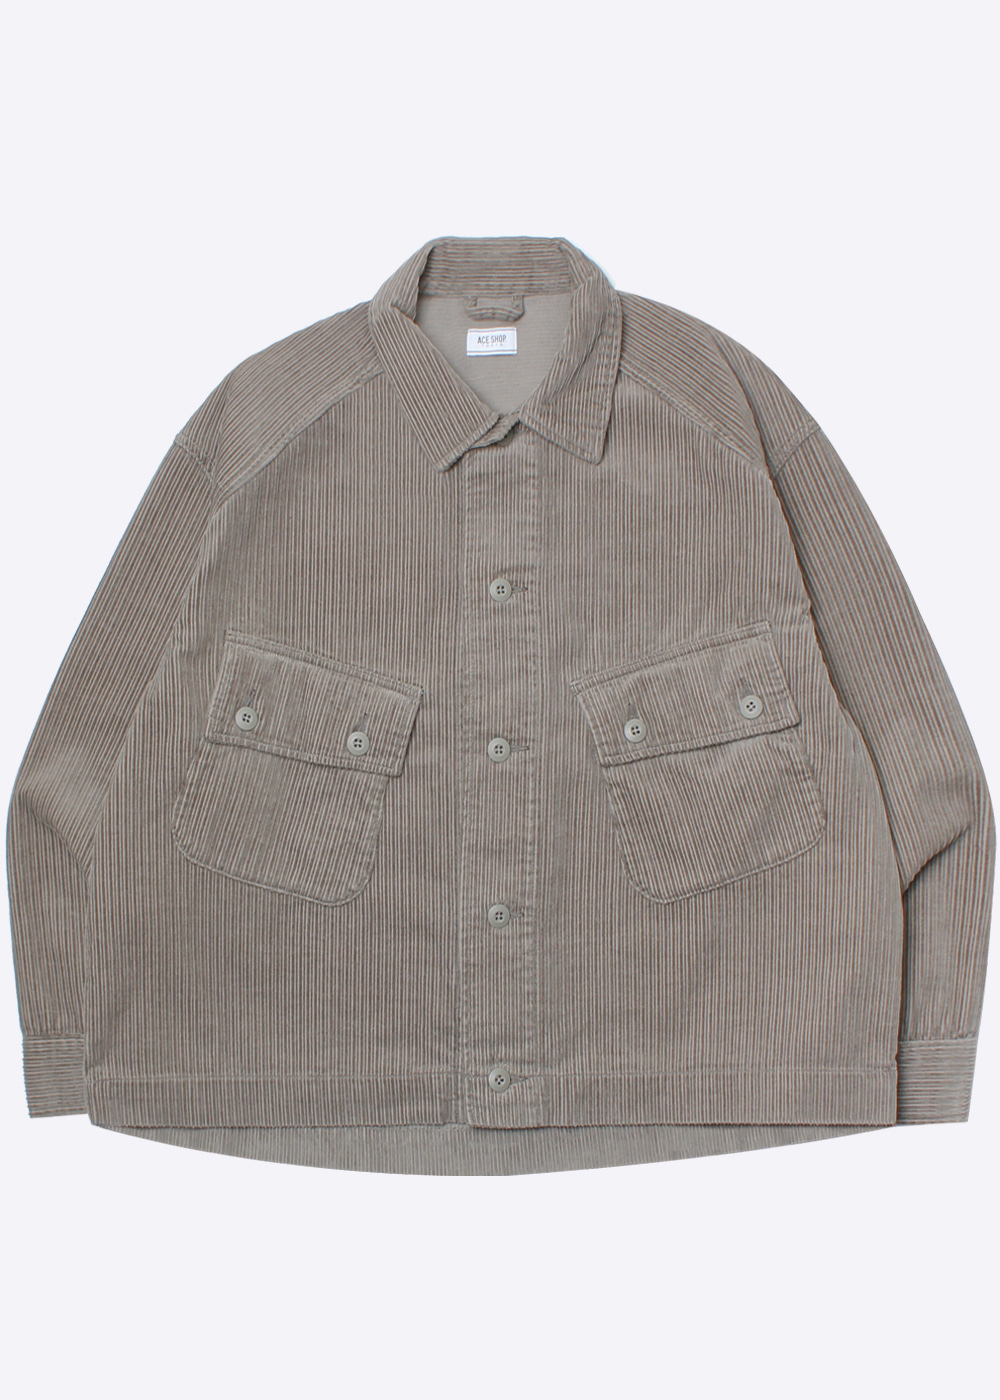 ACE SHOP’over fit’big pocket corduroy jacket